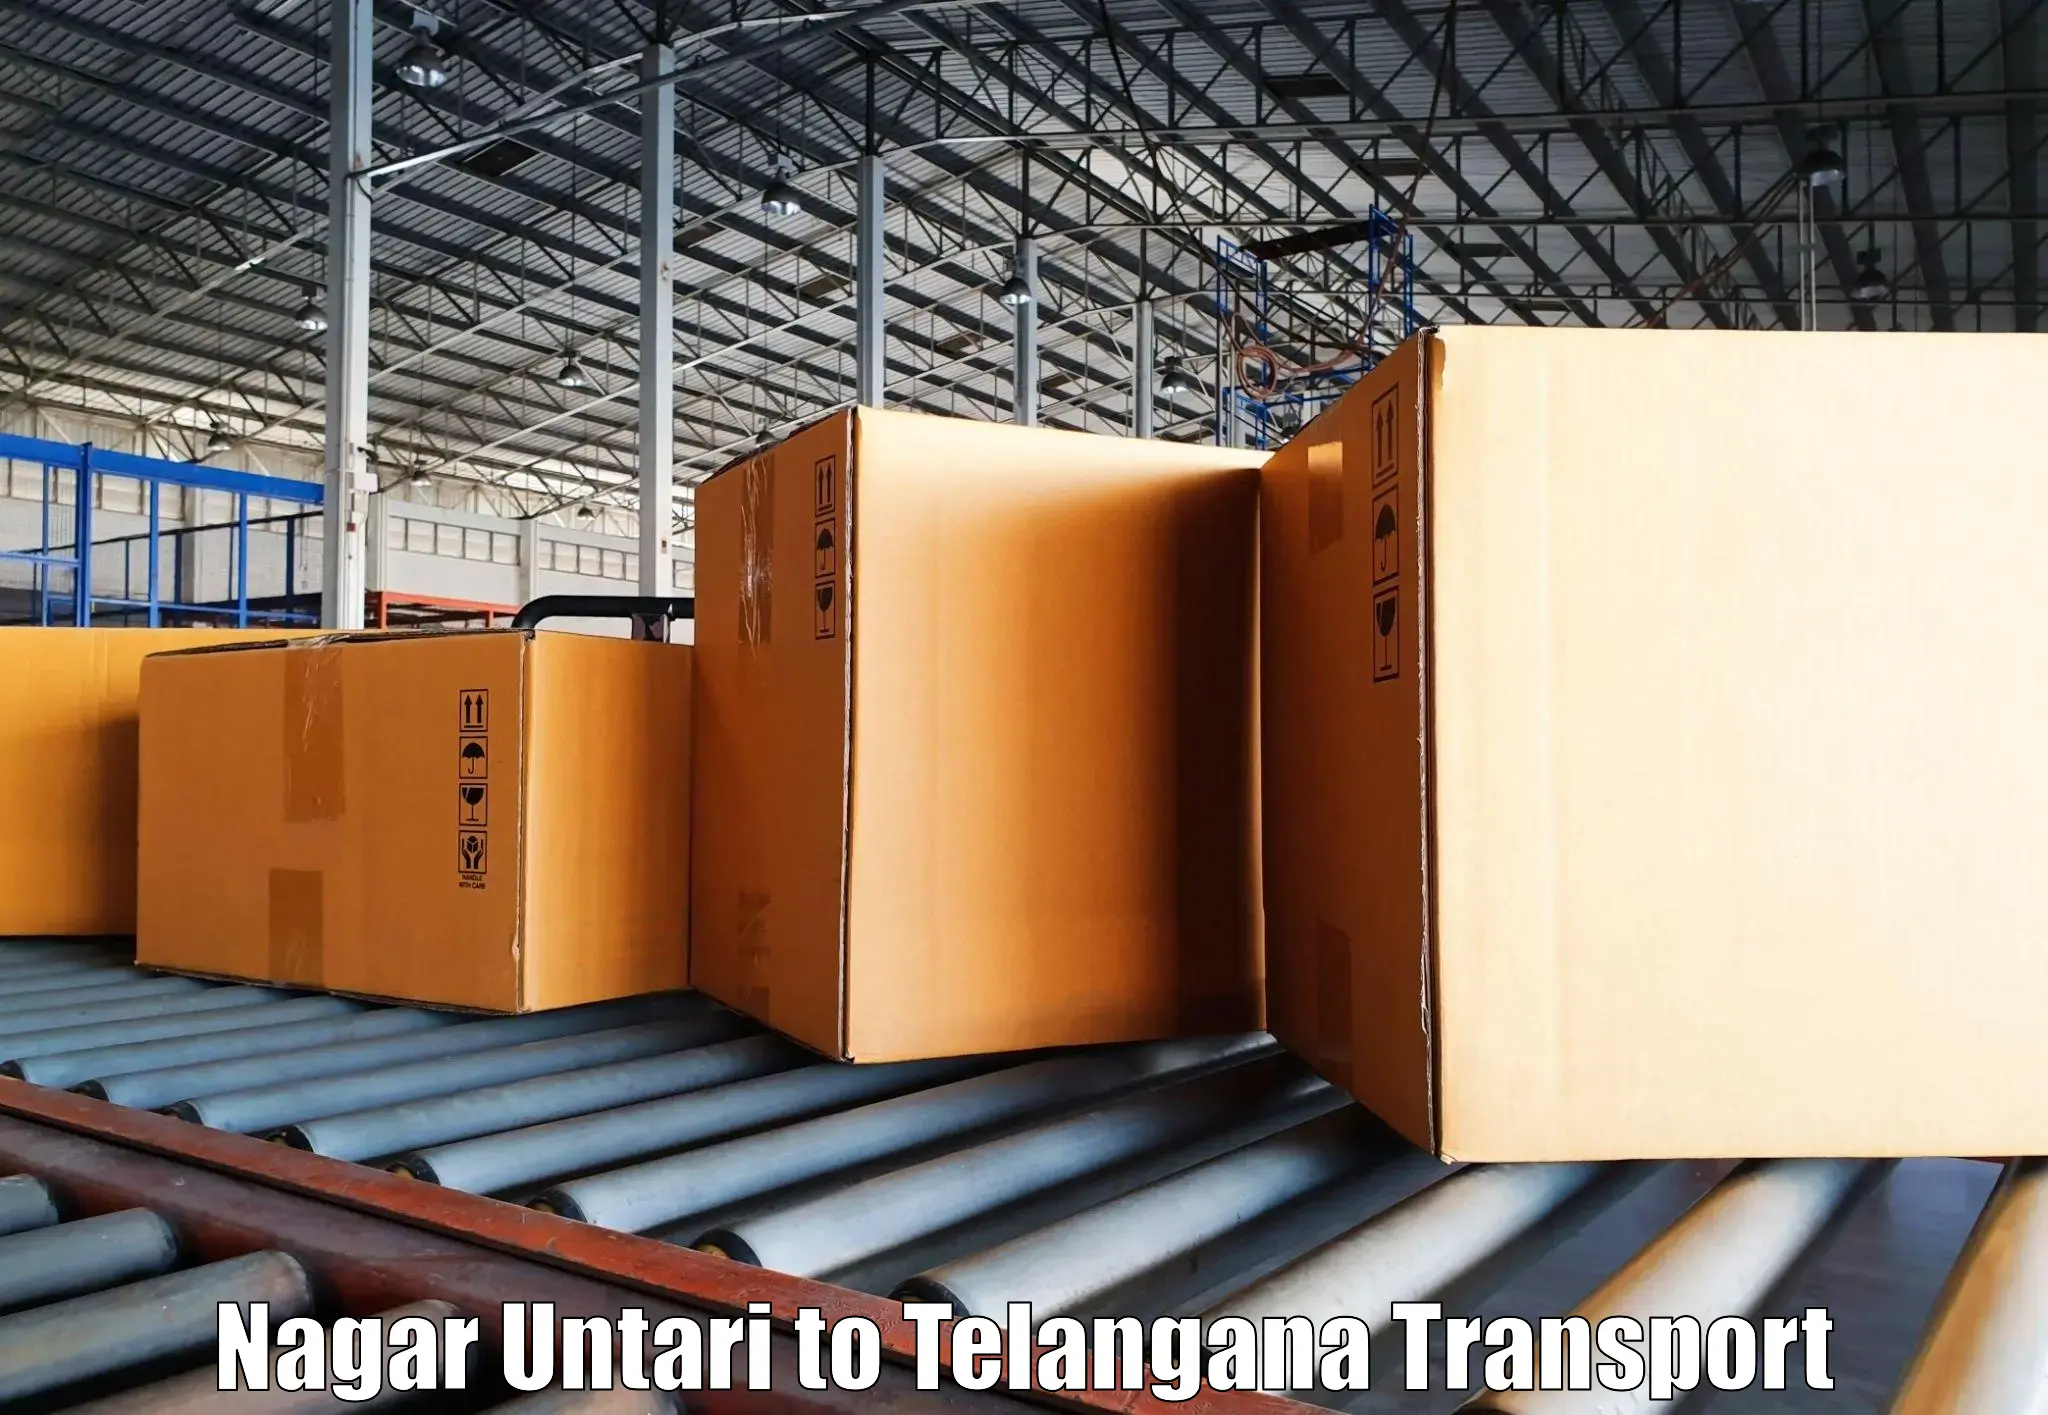 Cargo train transport services Nagar Untari to Shankarpalle